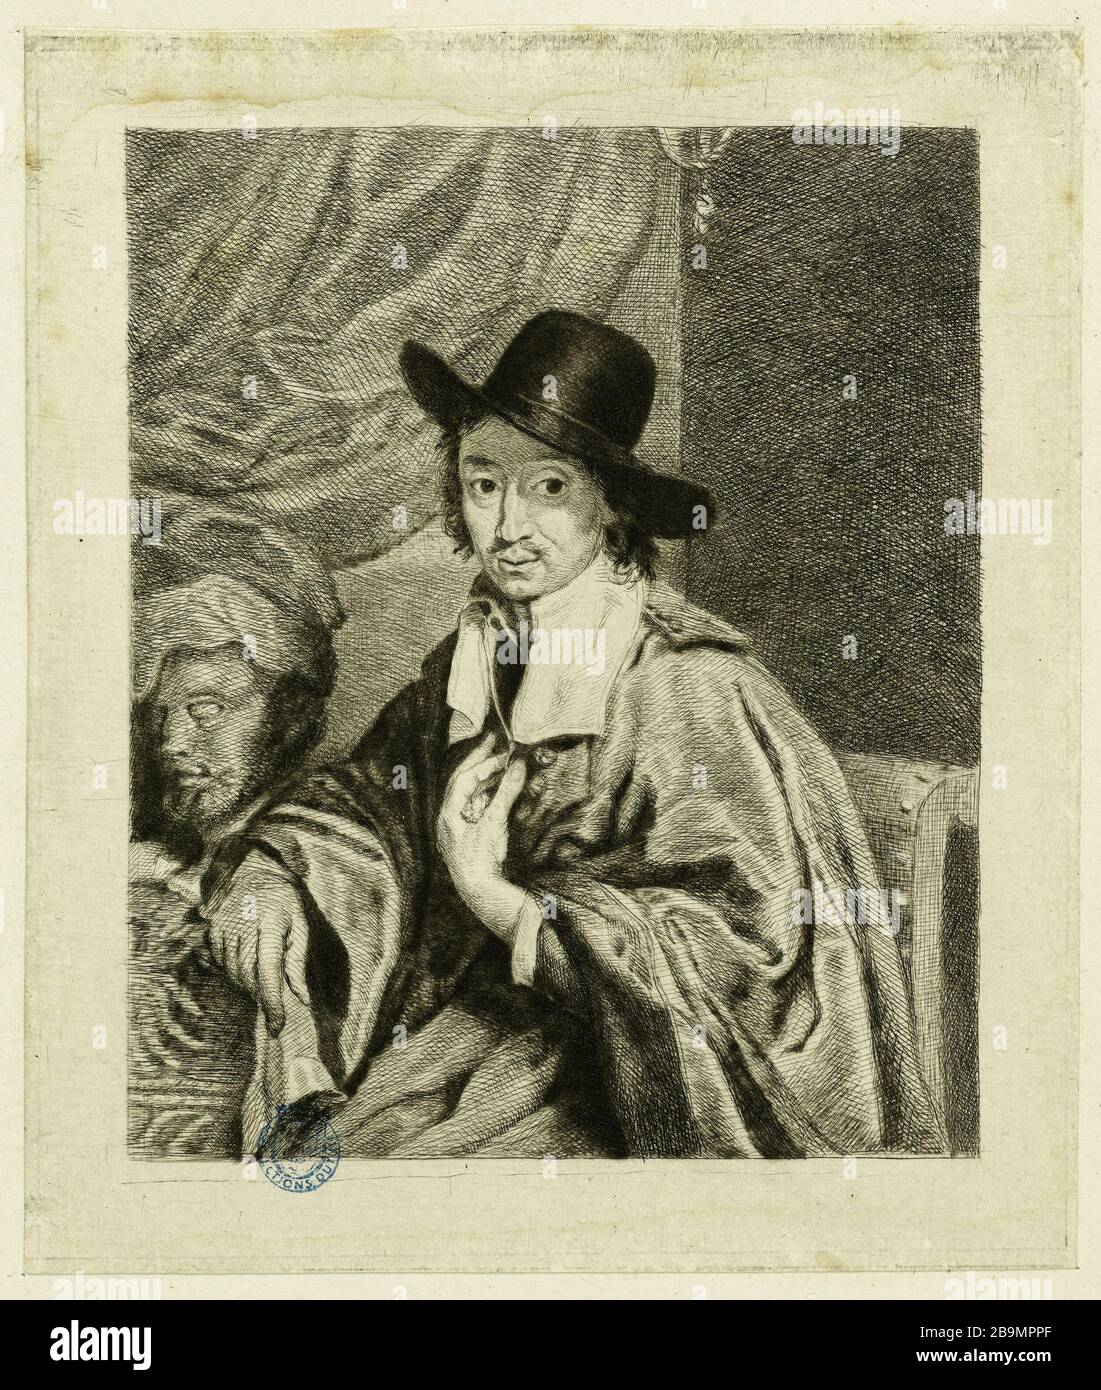 Third portrait of van Ostade Adriaen Van Ostade (1610-1685). C. B. Coclers (XVIIème siècle). Troisième portrait de Van Ostade. Eau-forte, XVIIème siècle Stock Photo